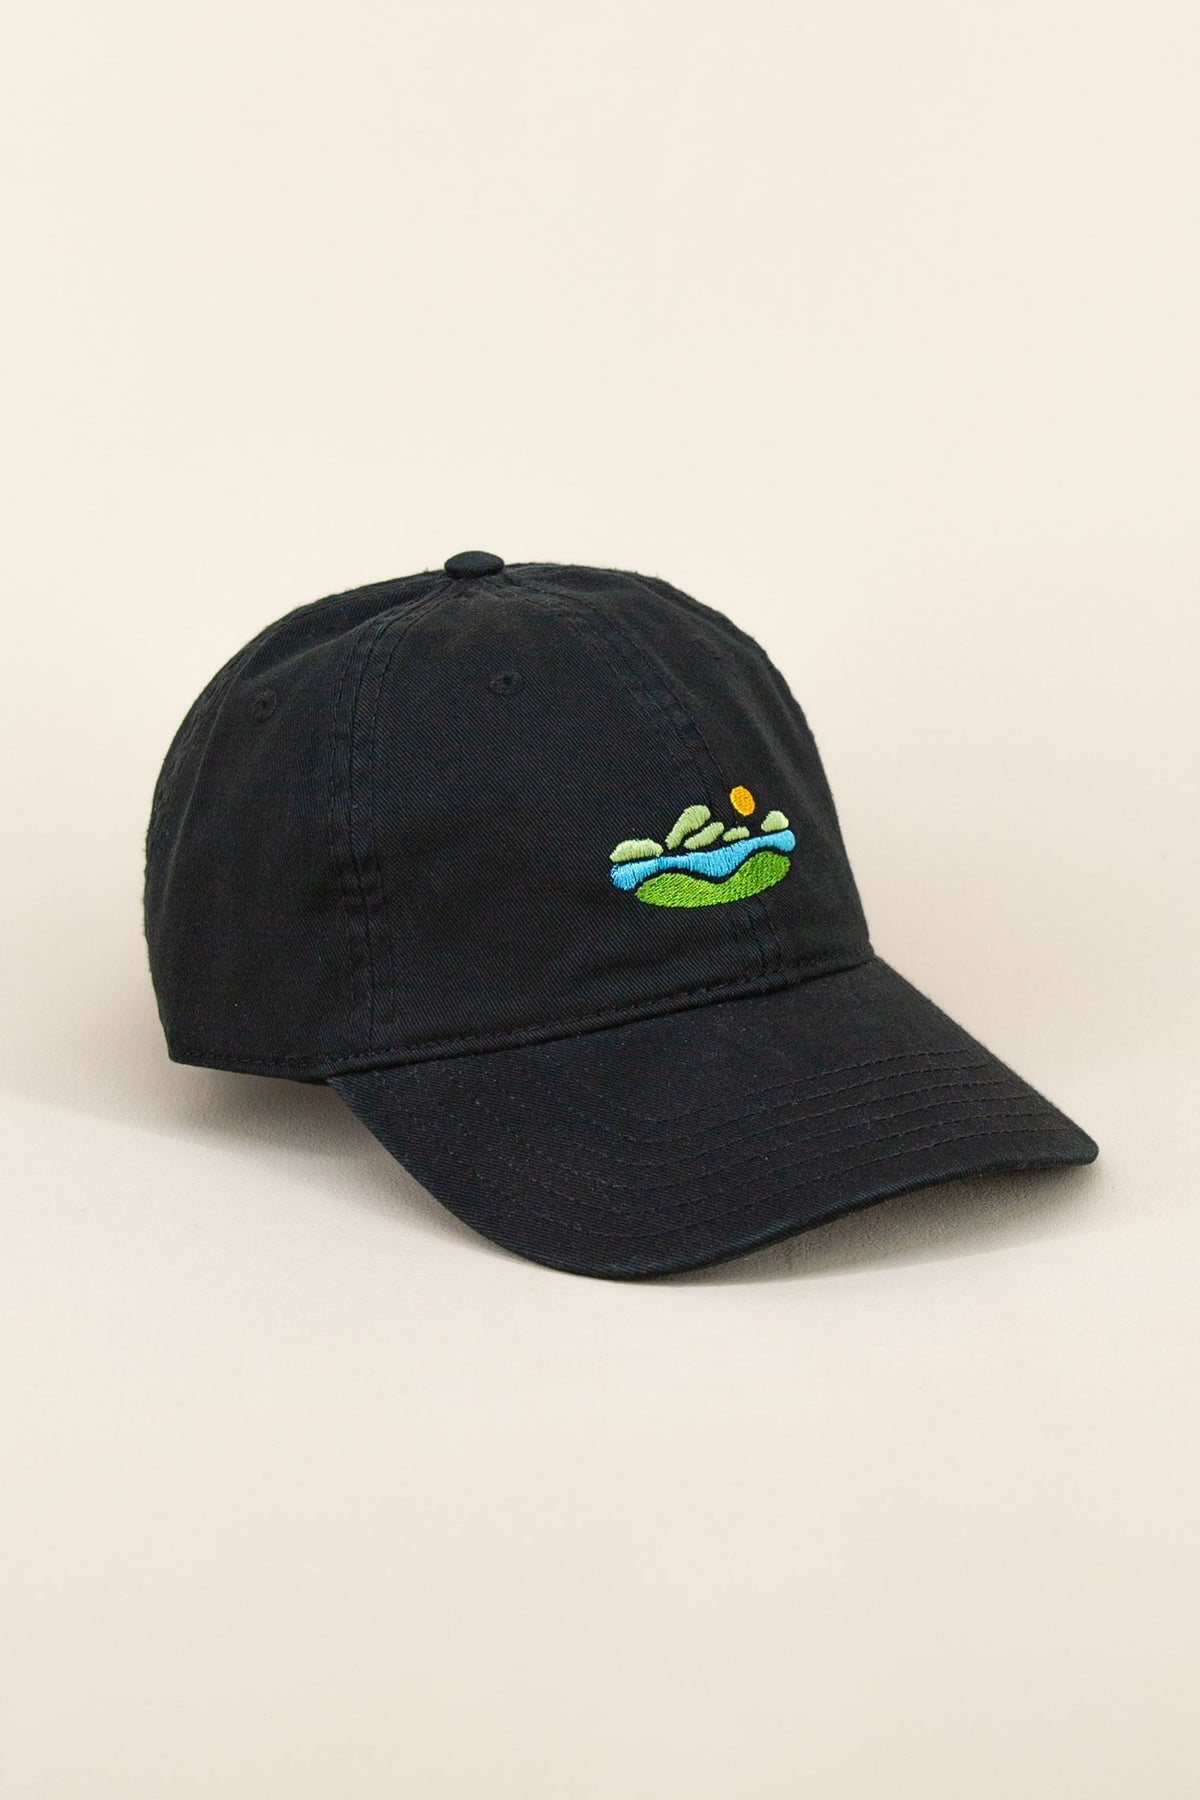 swimmin hole hat, final sale